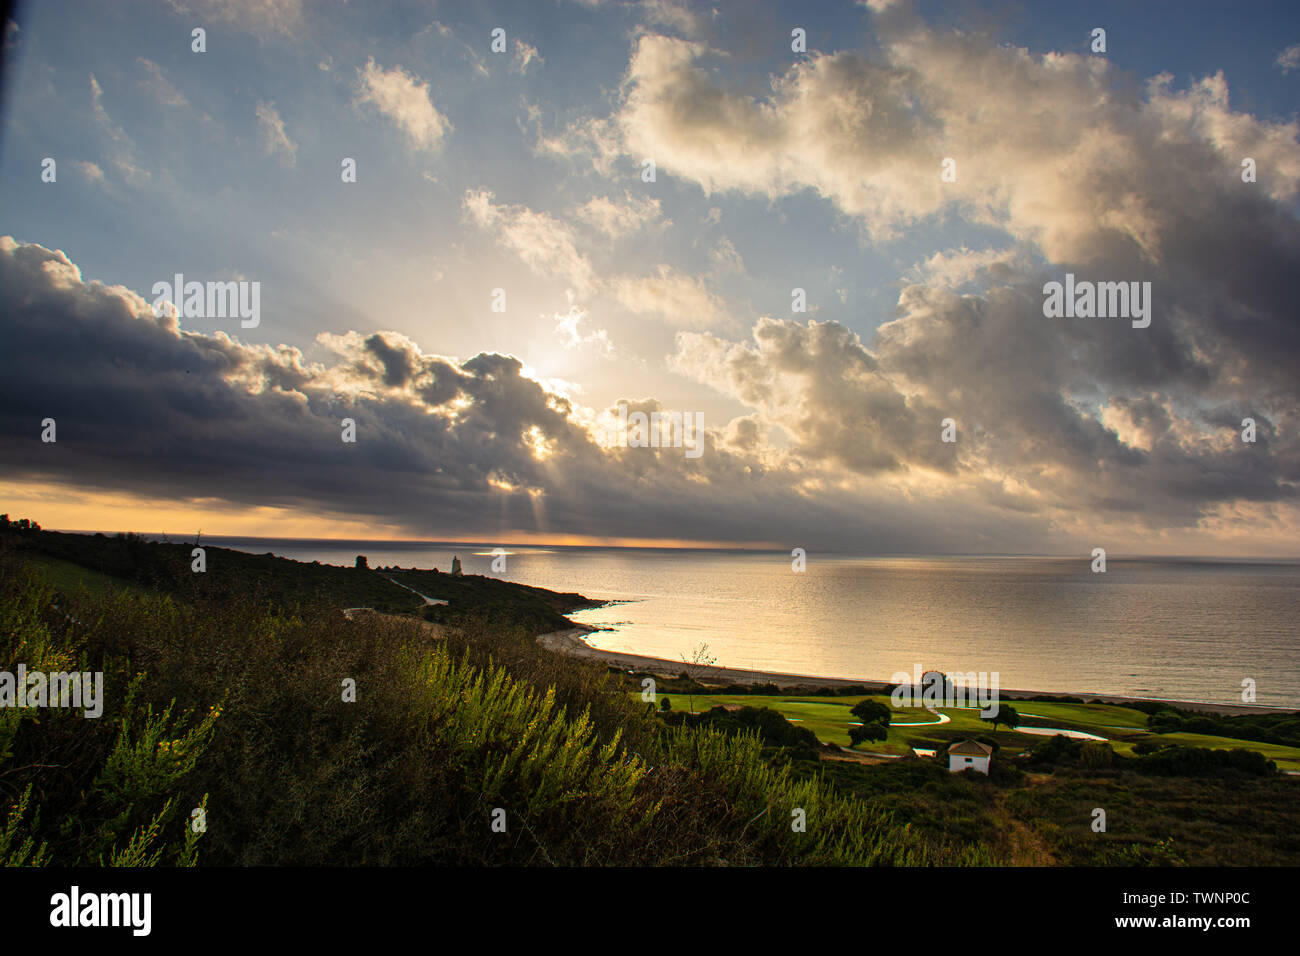 La Alcaidesa urbanizzazione, Cadice in Spagna sunrise con un orizzonte nuvoloso e il mare mediterraneo Foto Stock